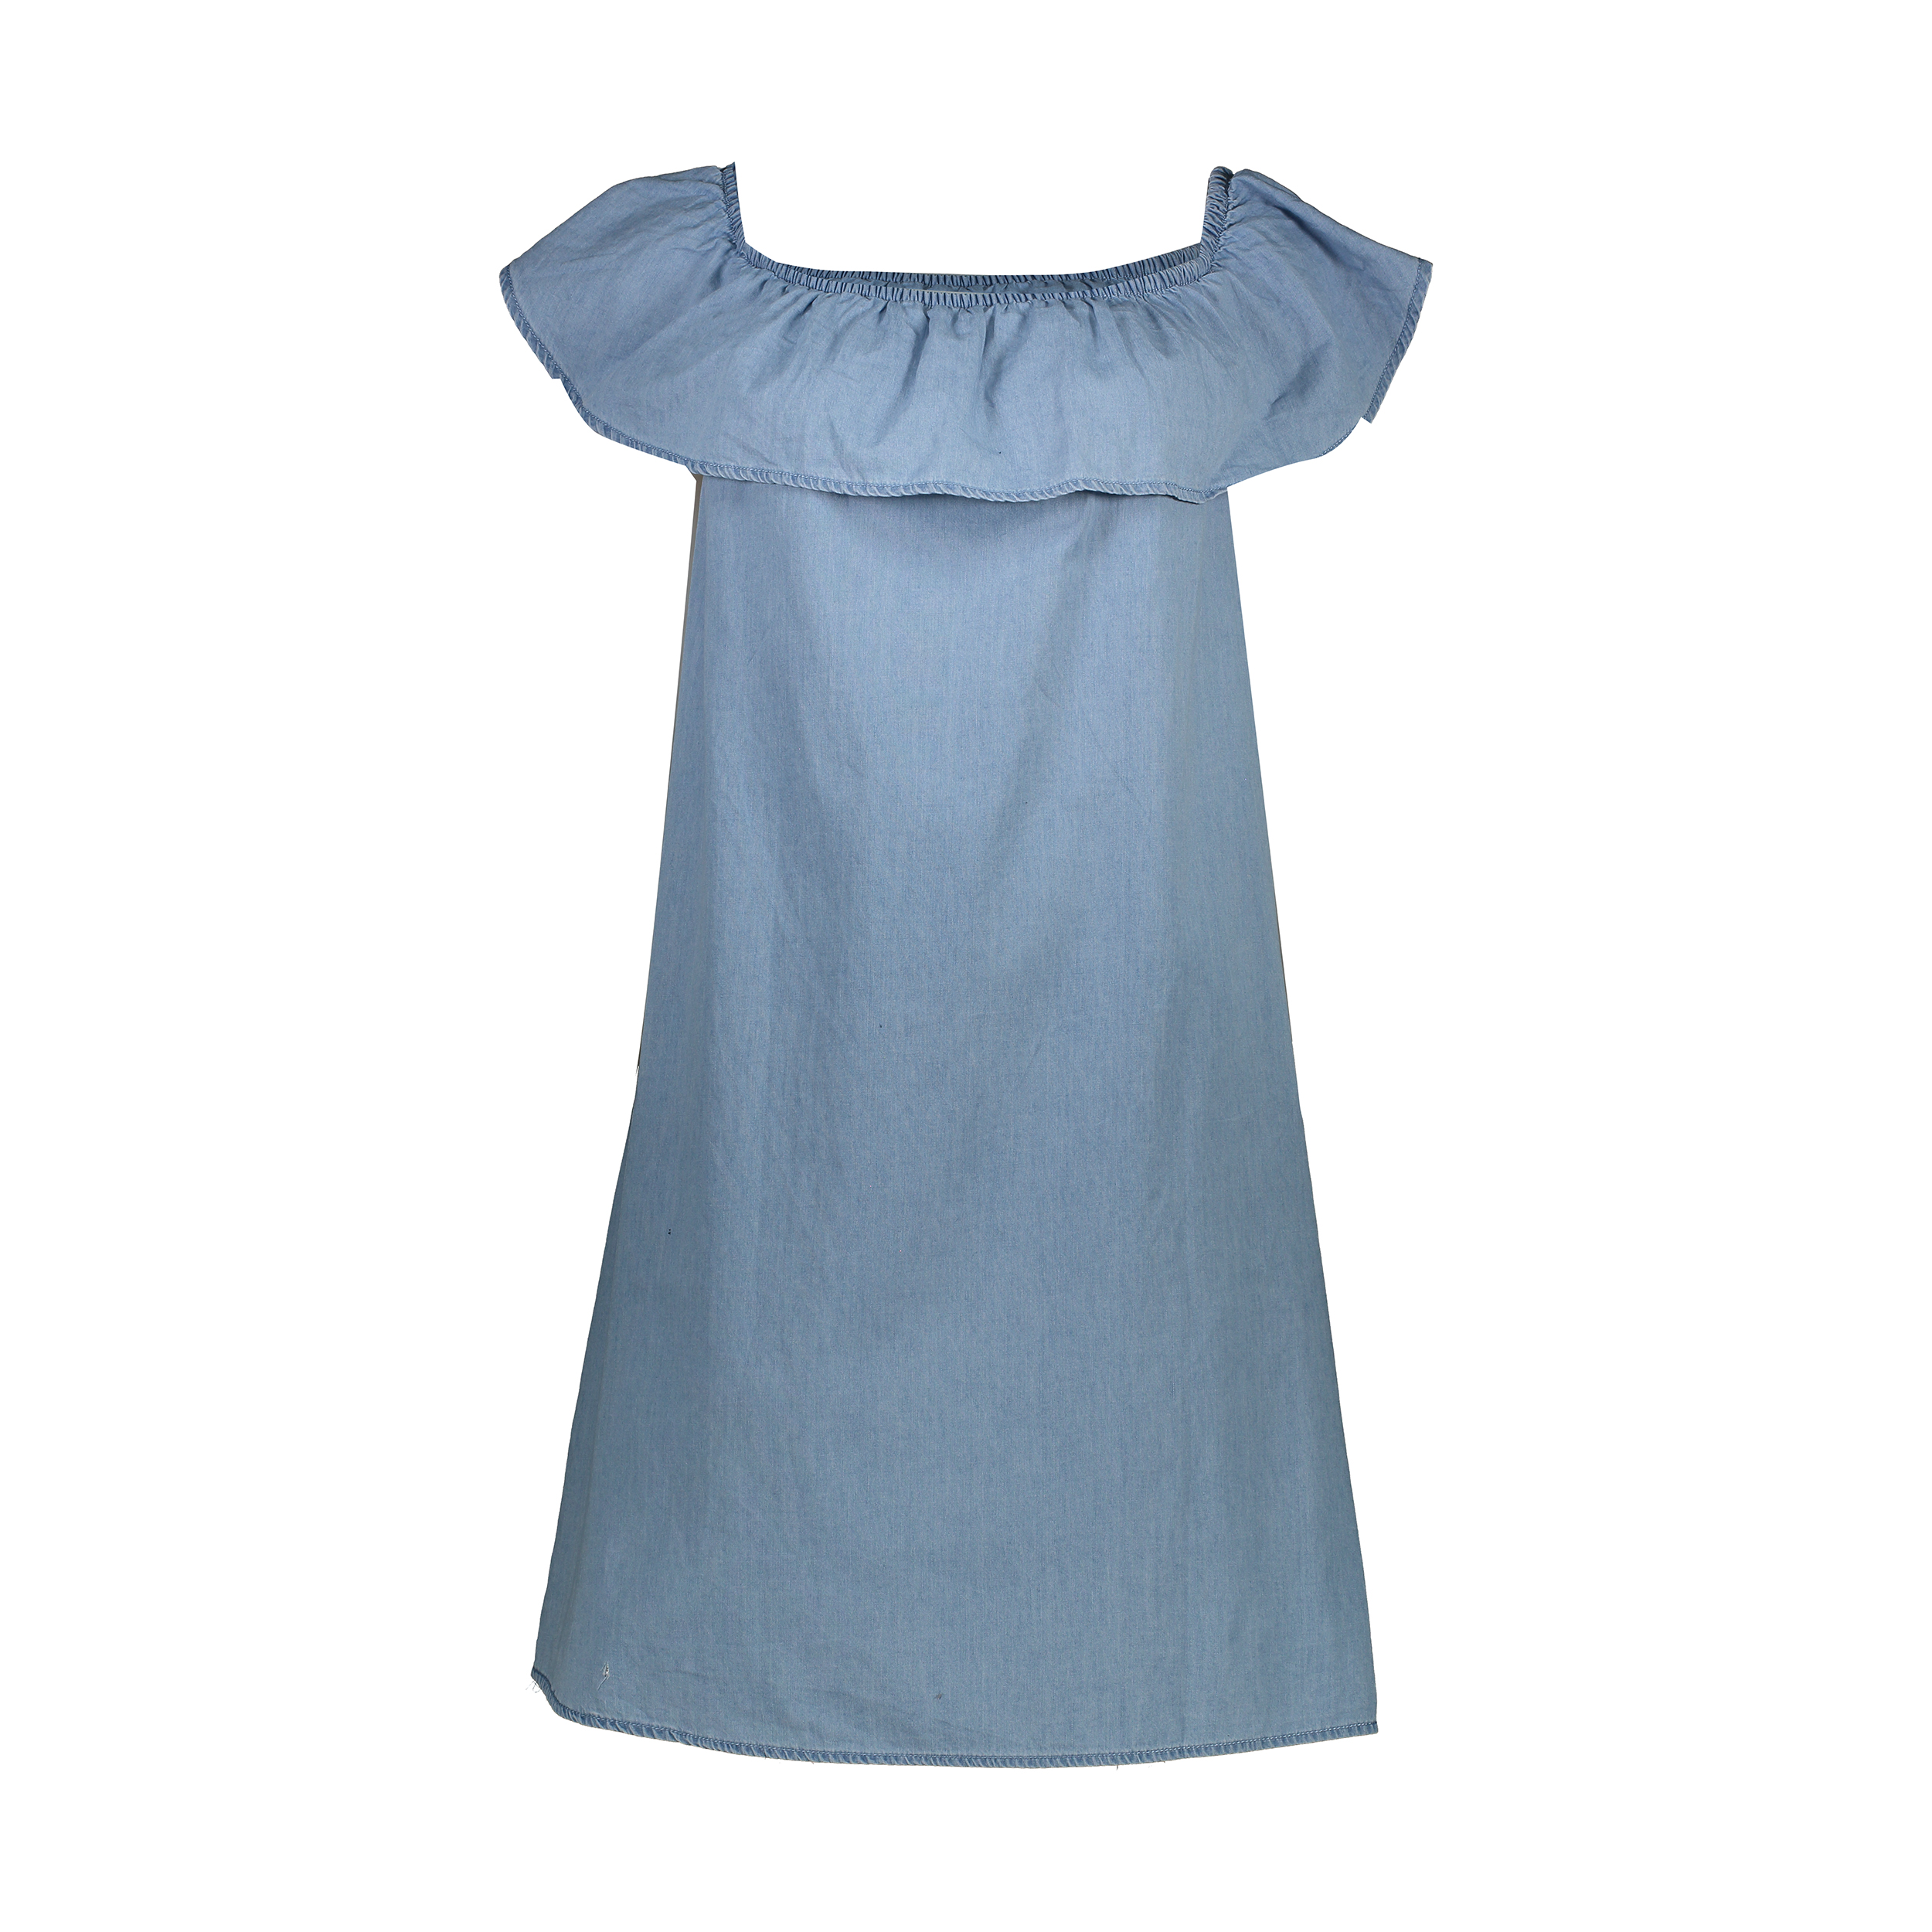 نکته خرید - قیمت روز پیراهن زنانه مدل NP01 خرید